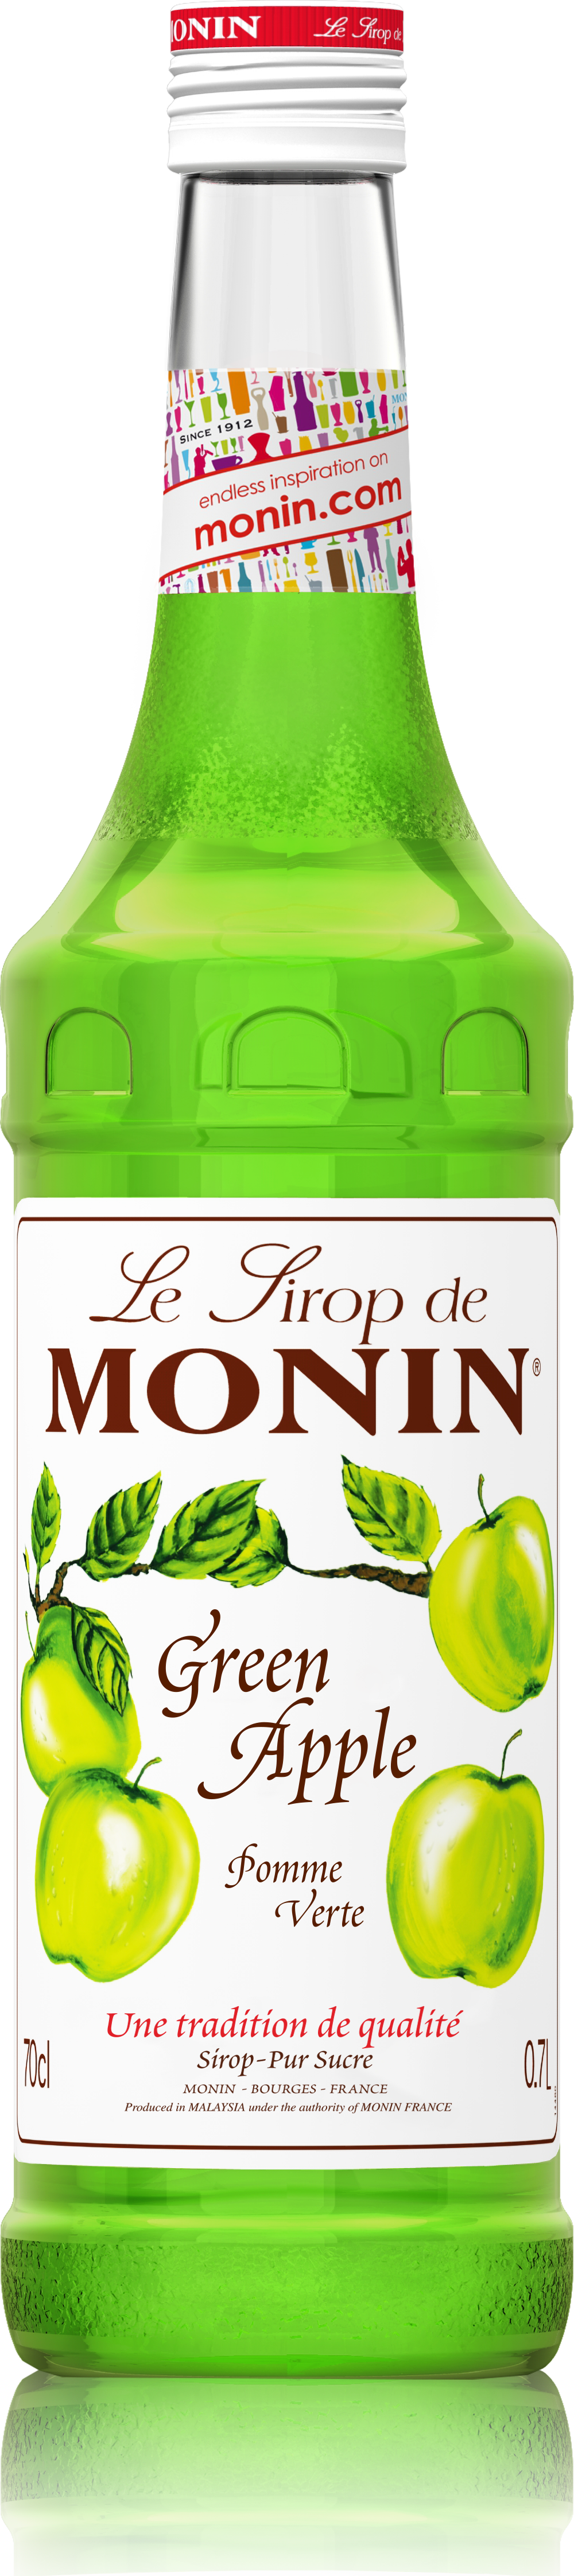 Le Sirop de MONIN Green Apple